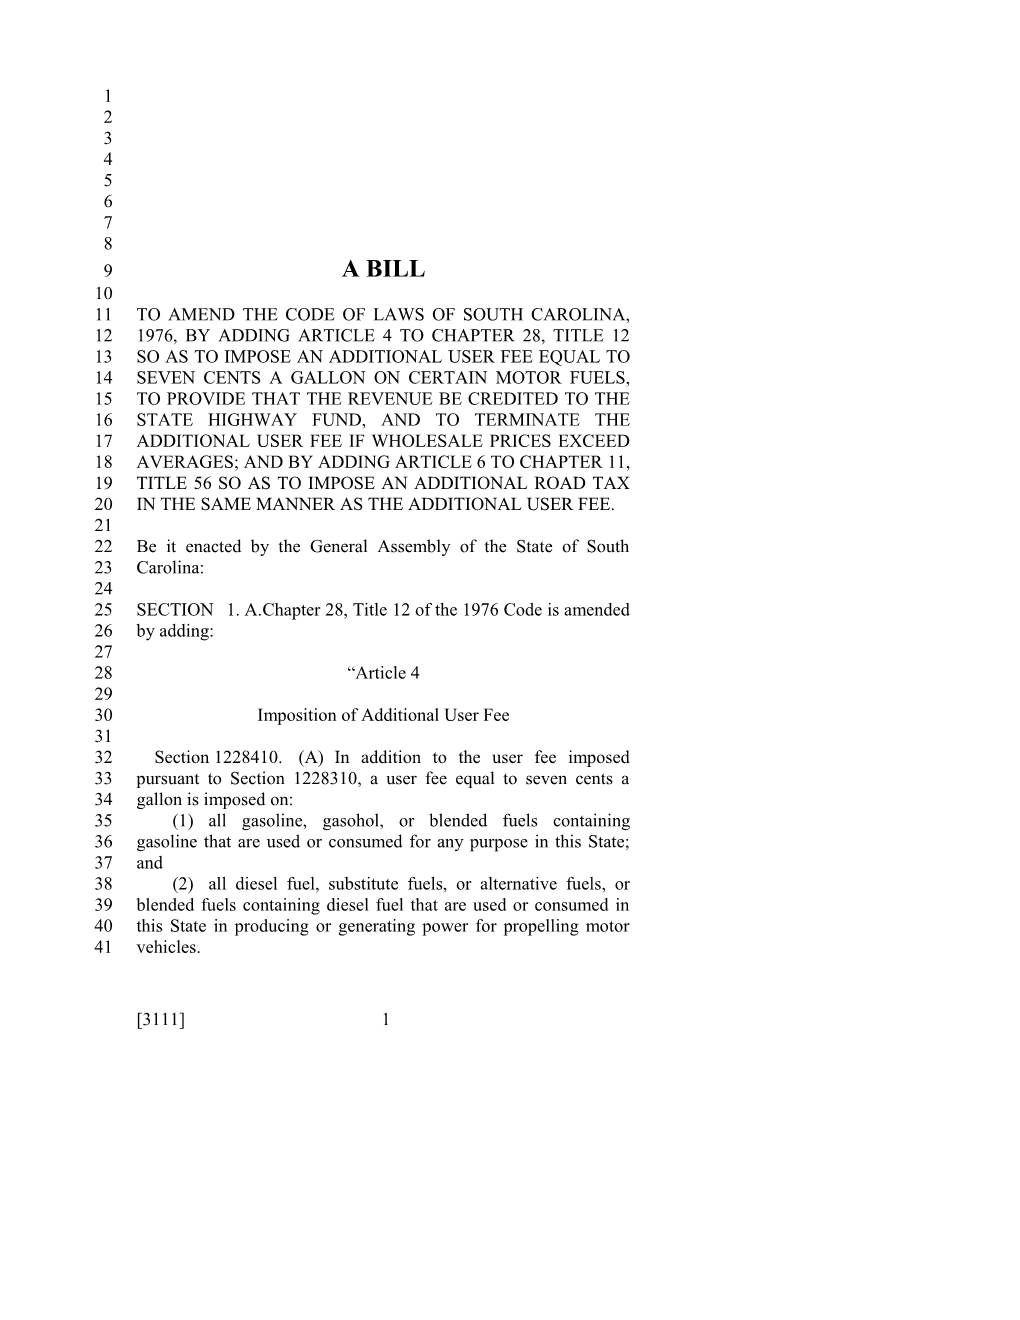 2017-2018 Bill 3111 Text of Previous Version (Dec. 15, 2016) - South Carolina Legislature Online